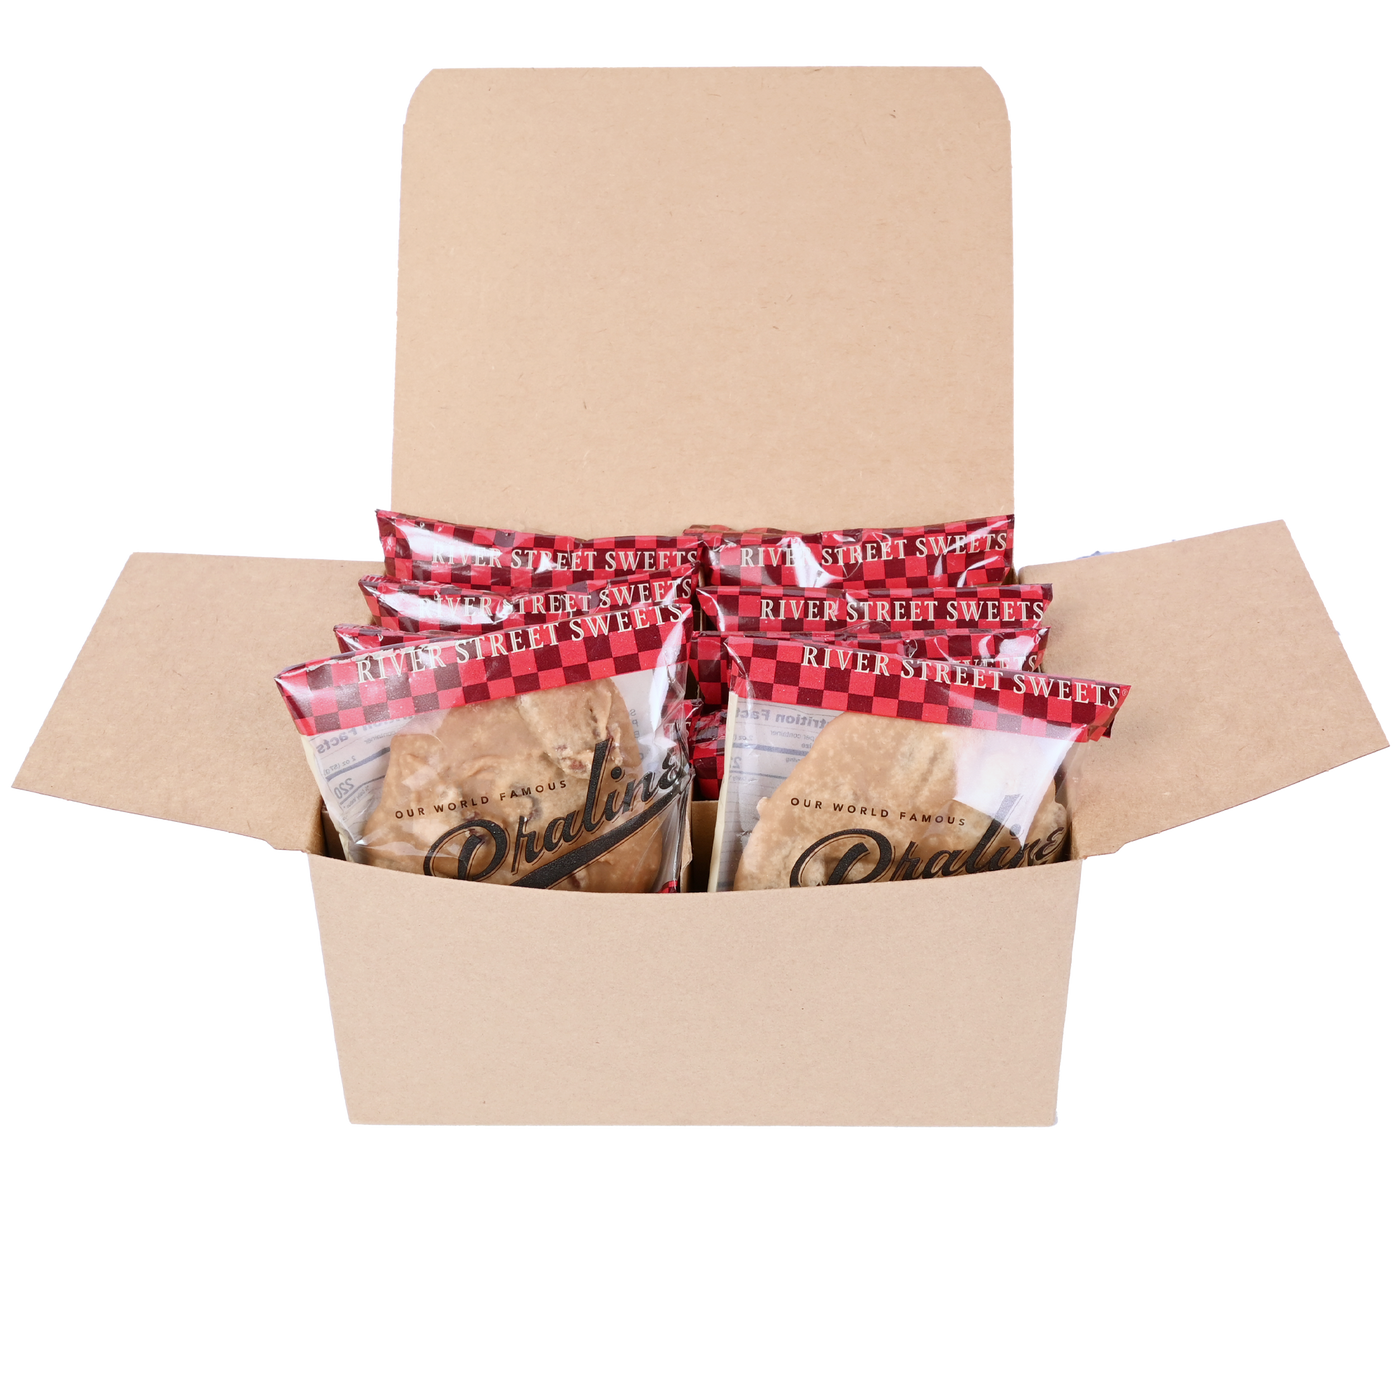 Custom 10pc Classic Praline Gift Box